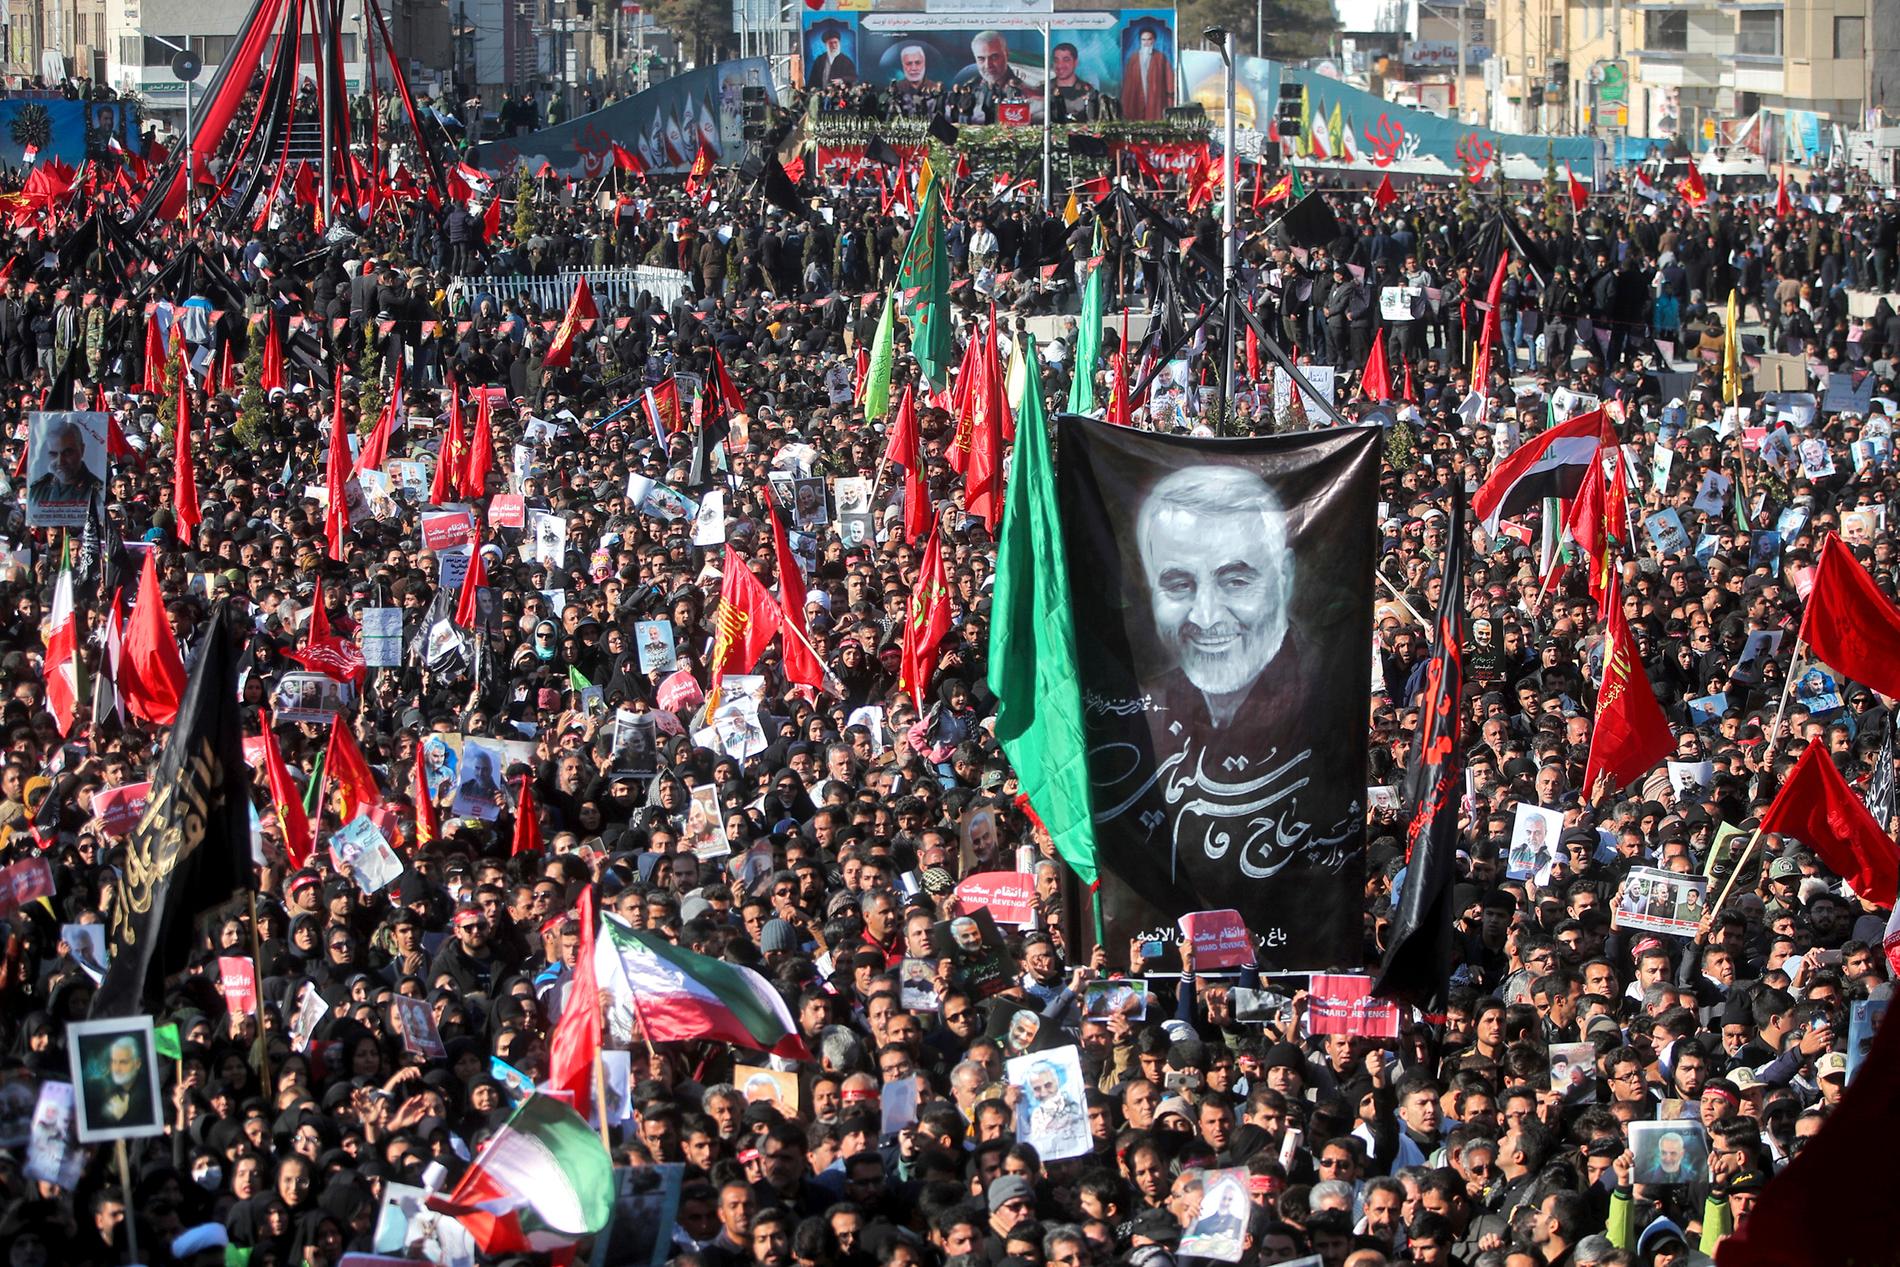 Qassem Soleimani begravs tisdagen 7 januari i sin hemstad Kerman. Gatorna i Kerman fylls av folk under begravningsceremonin.